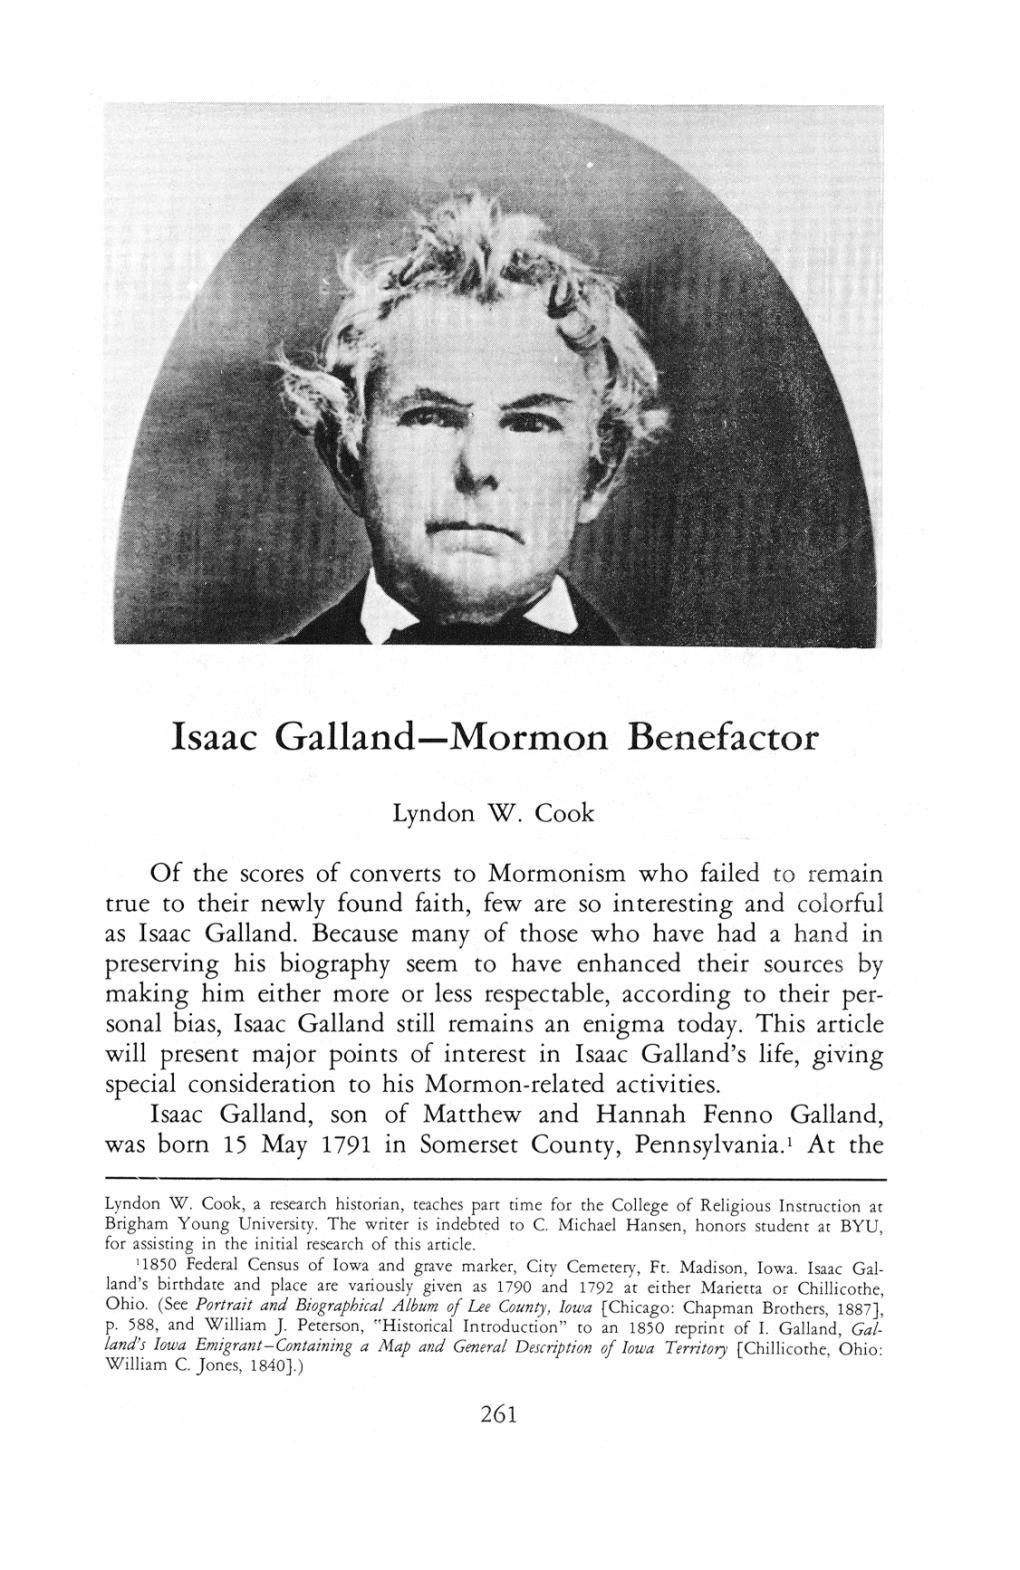 Isaac Galland Mormon Benefactor